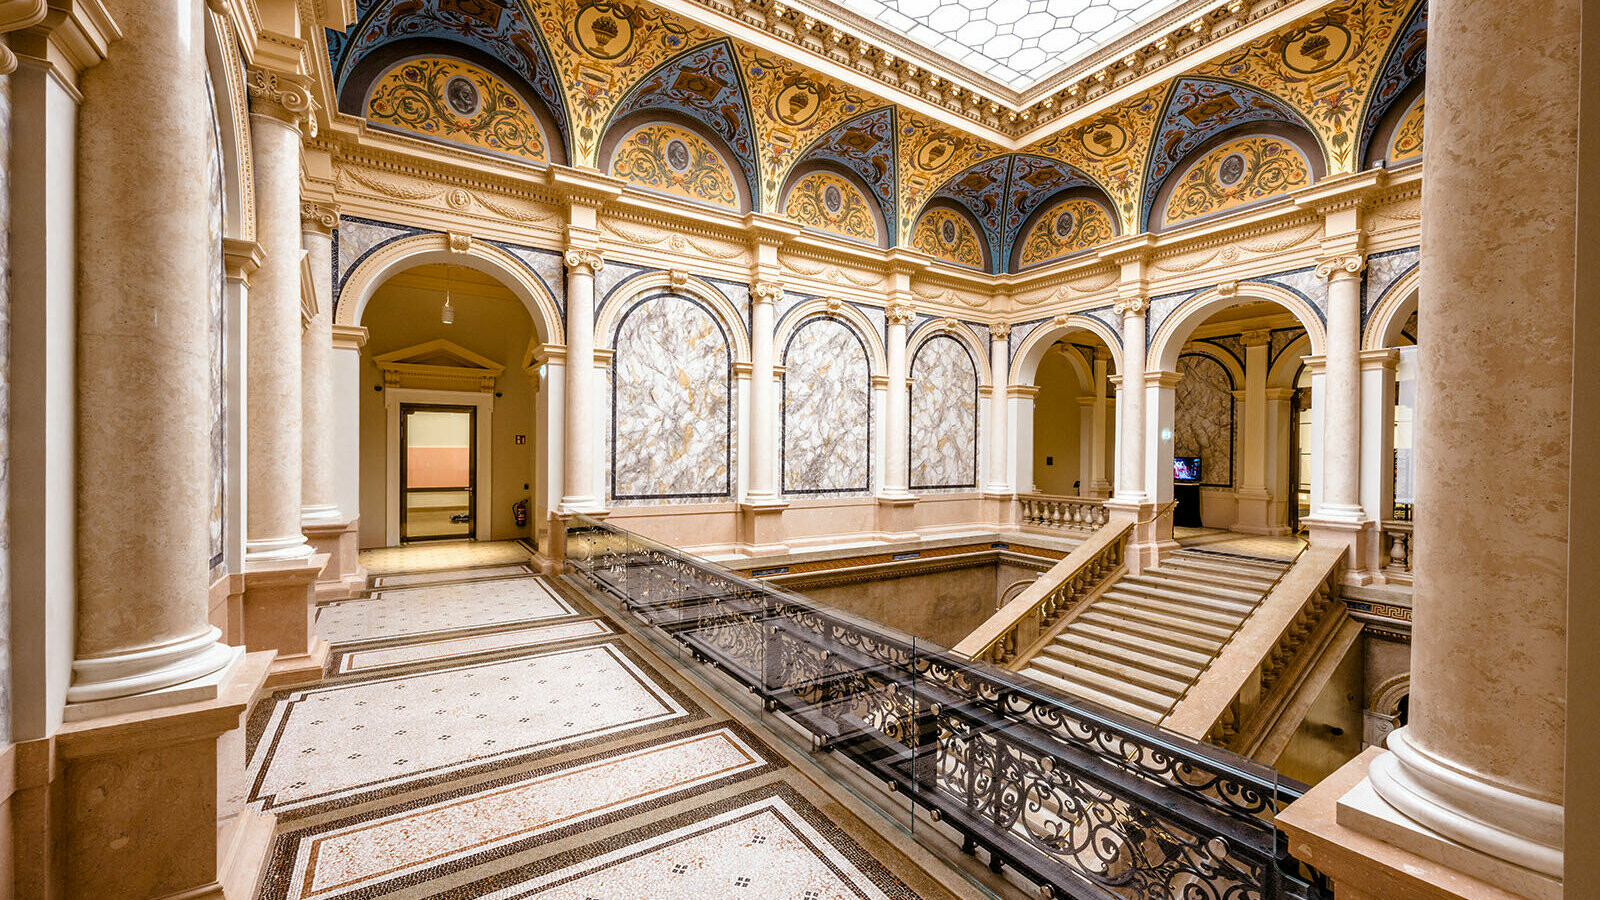 Das Innere des Künstlerhauses. Prächtige Dekorationen und ein markantes Treppenhaus verleihen der Atmosphäre ein besonderes Flair.